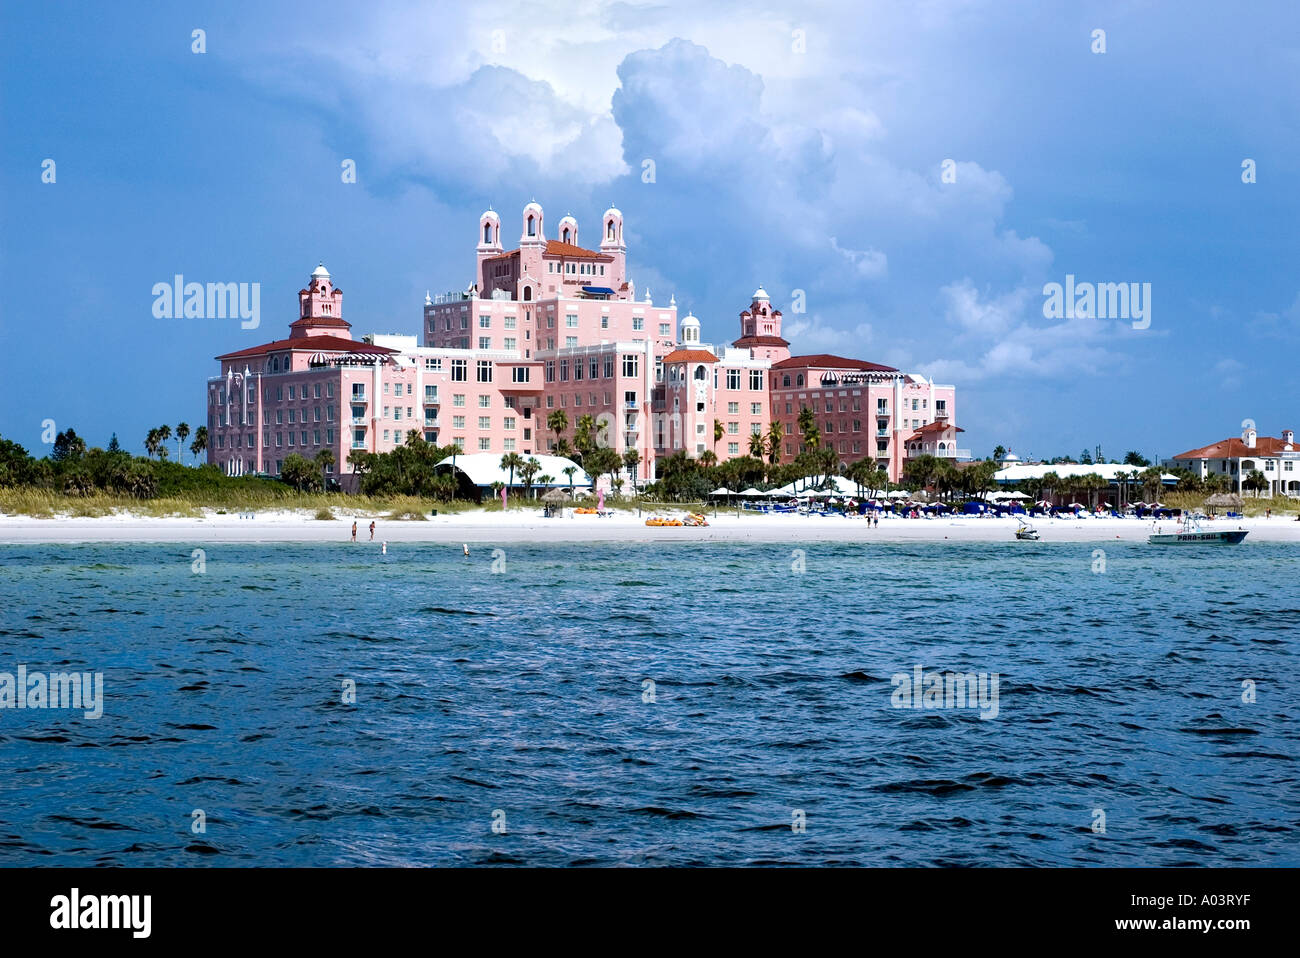 Don Cesar Hotel, St. Petersburg, Tampa Bay, Florida, USA Stock Photo